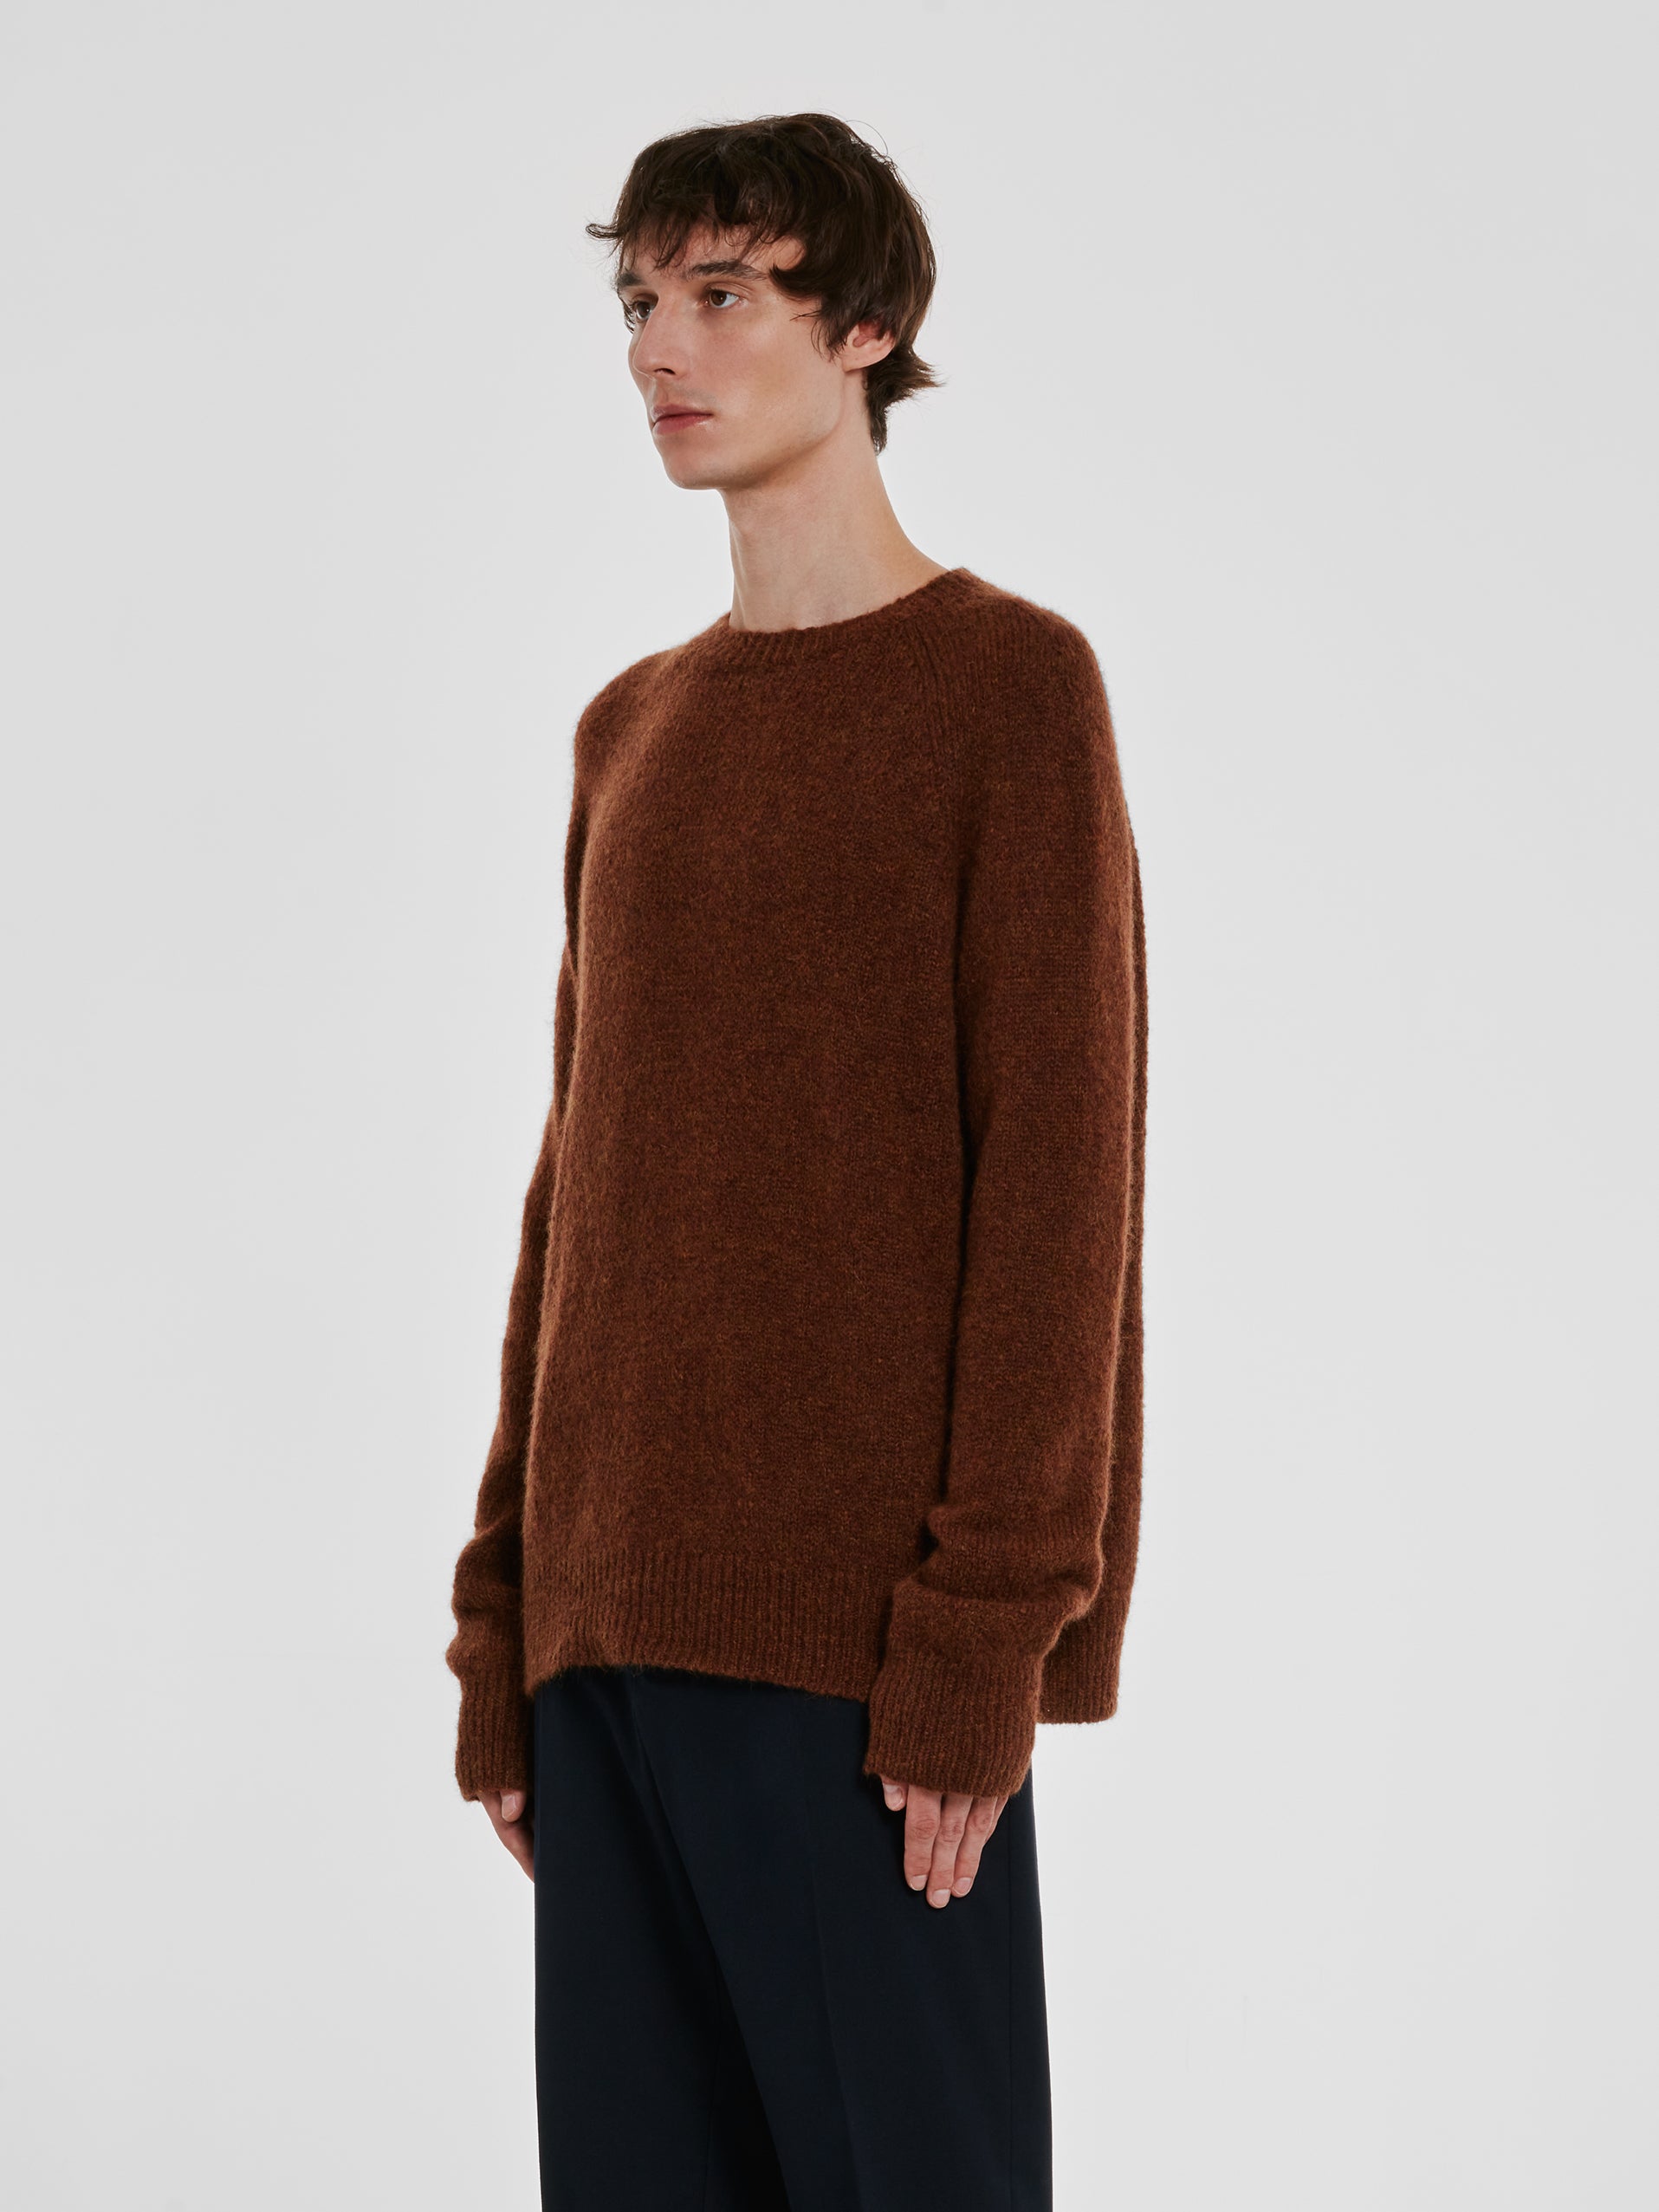 Dries Van Noten - Men’s Wool Sweater - (Brown) view 2